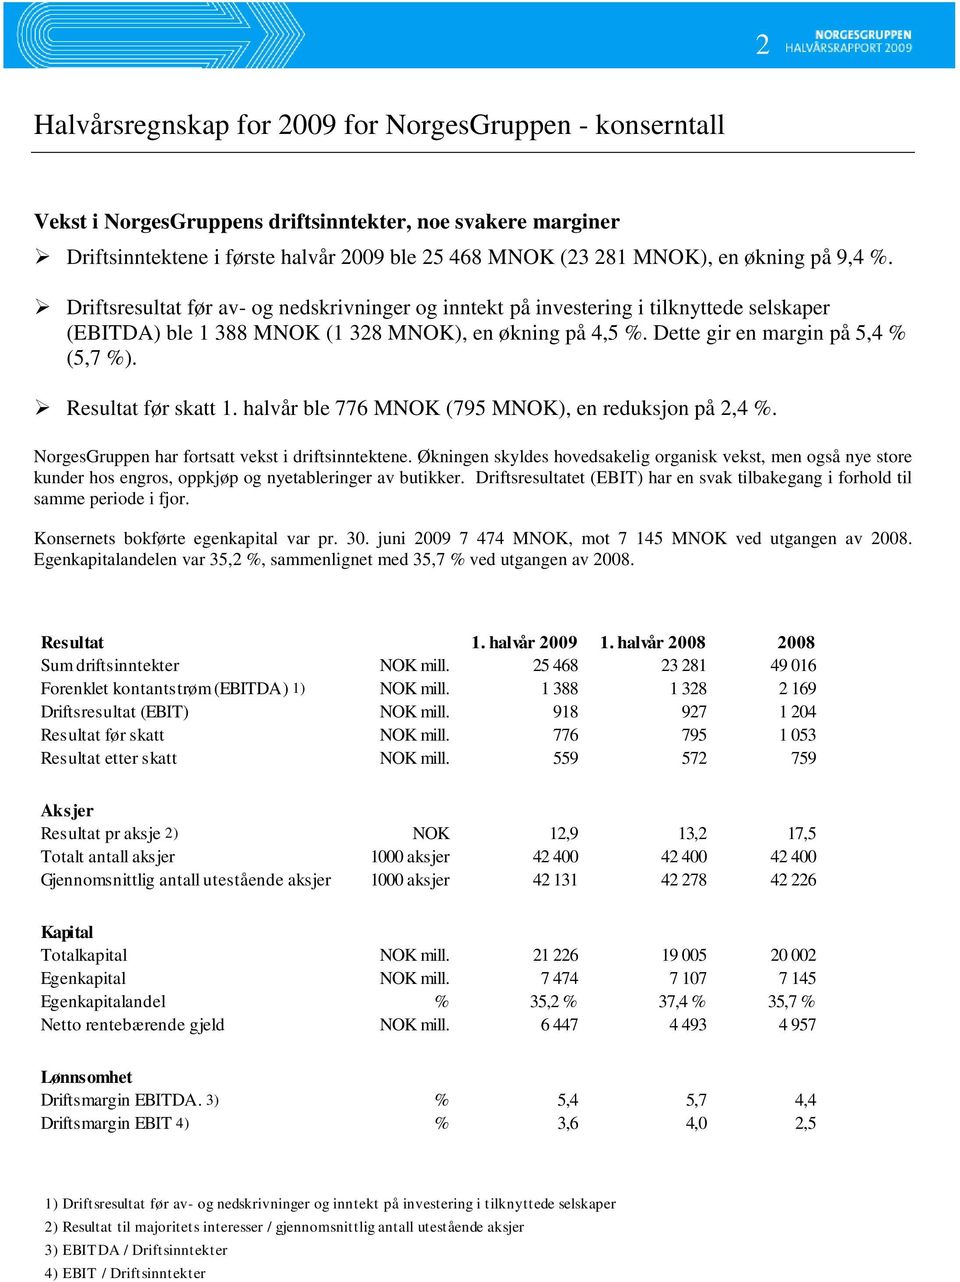 Resultat før skatt 1. halvår ble 776 MNOK (795 MNOK), en reduksjon på 2,4 %. NorgesGruppen har fortsatt vekst i driftsinntektene.